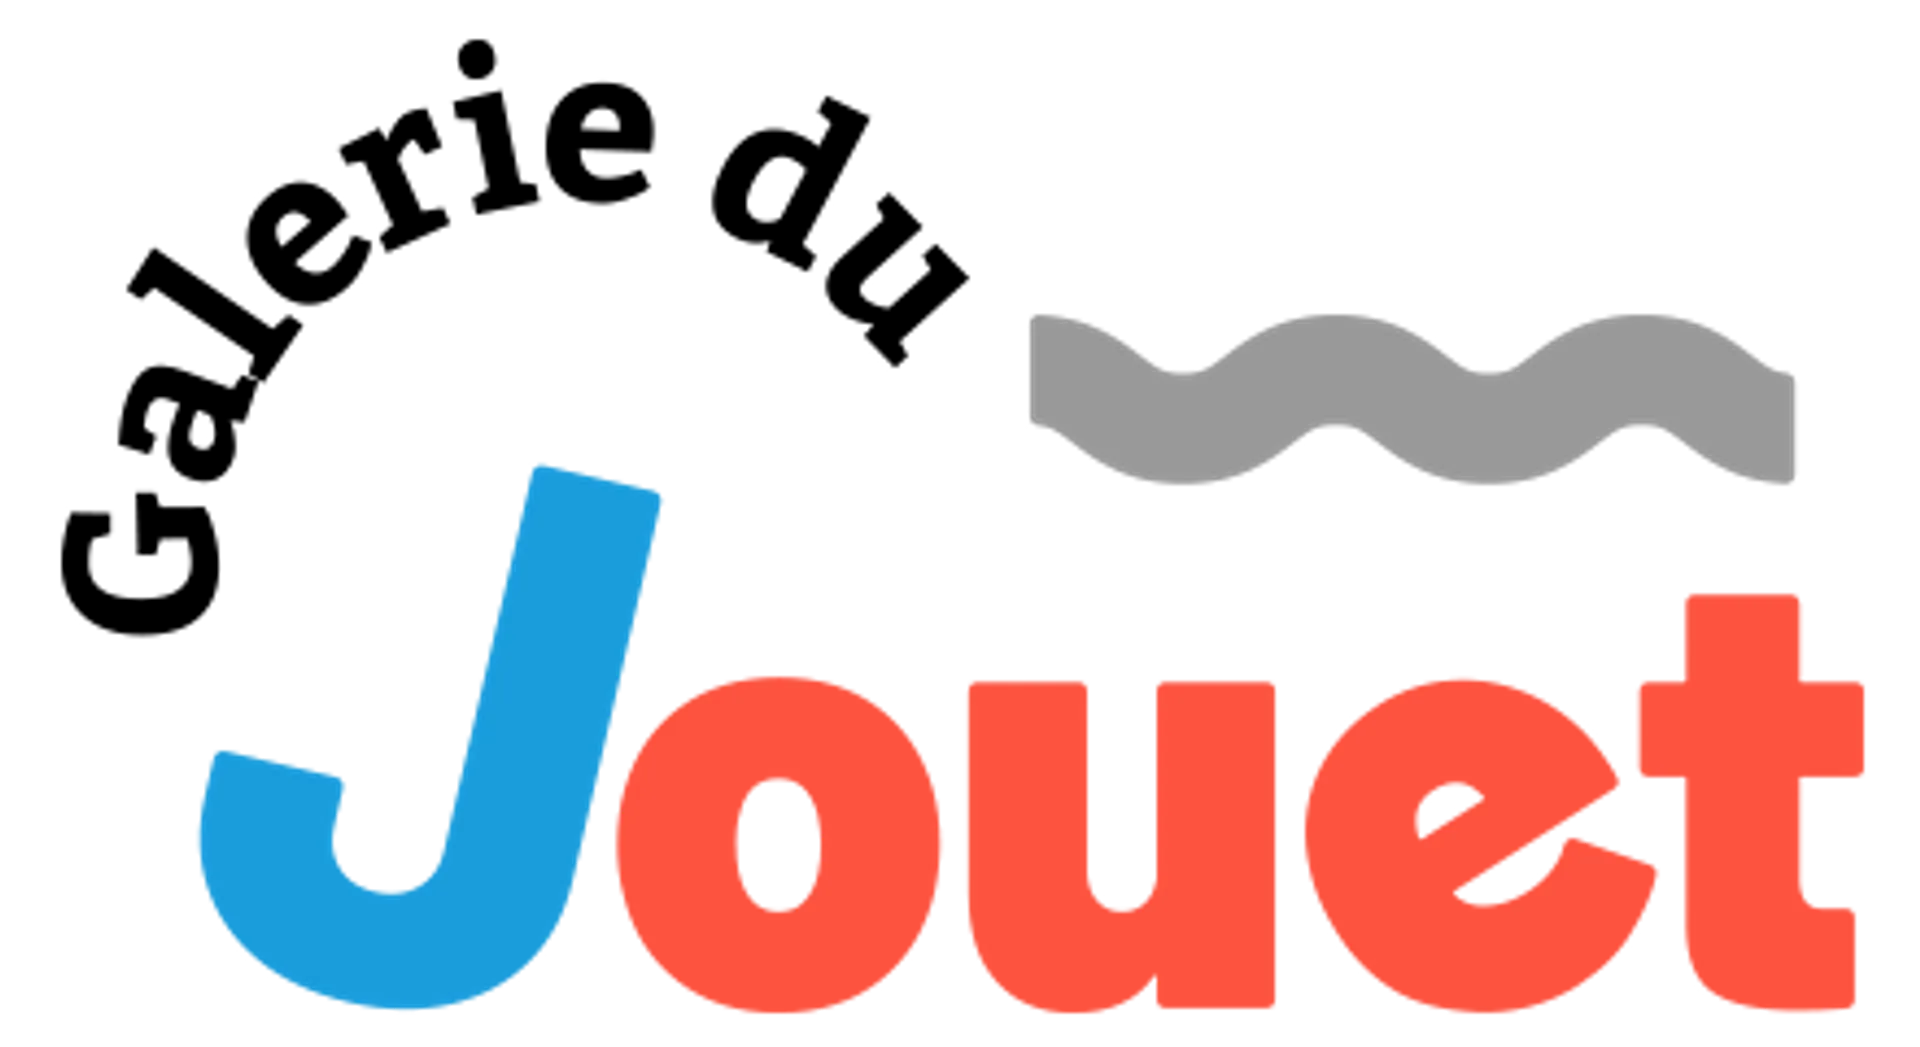 GALERIE DU JOUET logo de circulaire